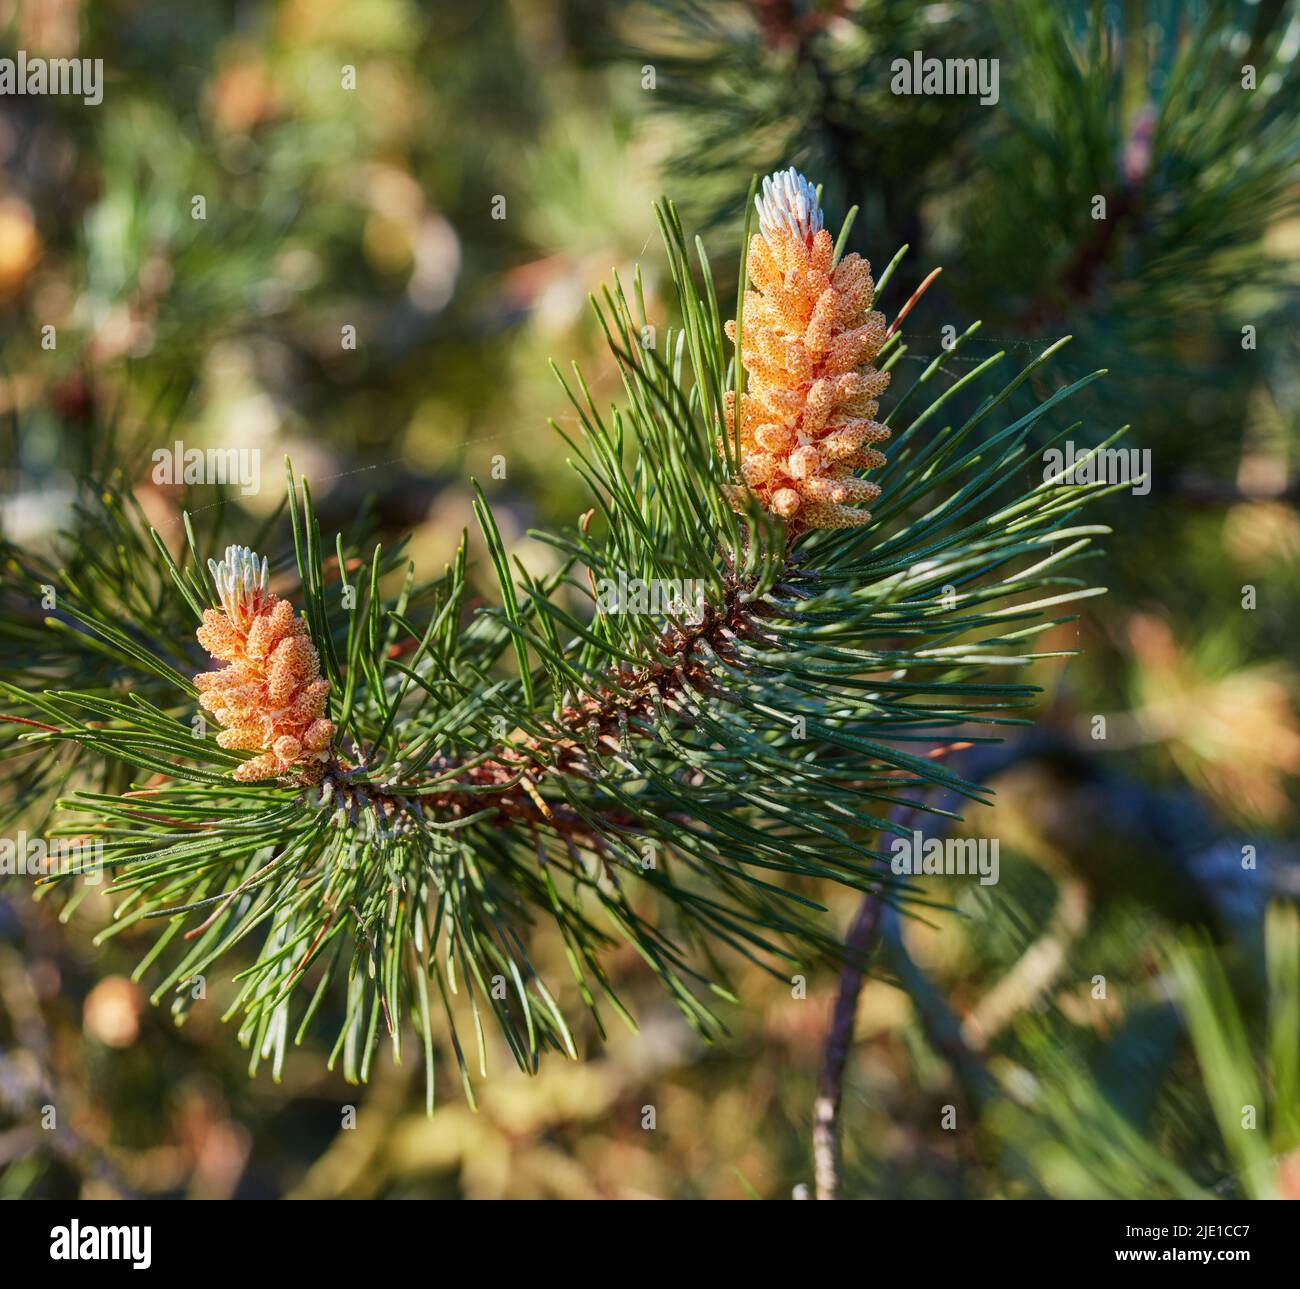 Nahaufnahme eines roten Kiefernzweiges, der in einem immergrünen borealen Wald wächst. Nadelwaldpflanze im Frühjahr an einem sonnigen Tag vor verschwommenem Hintergrund Stockfoto